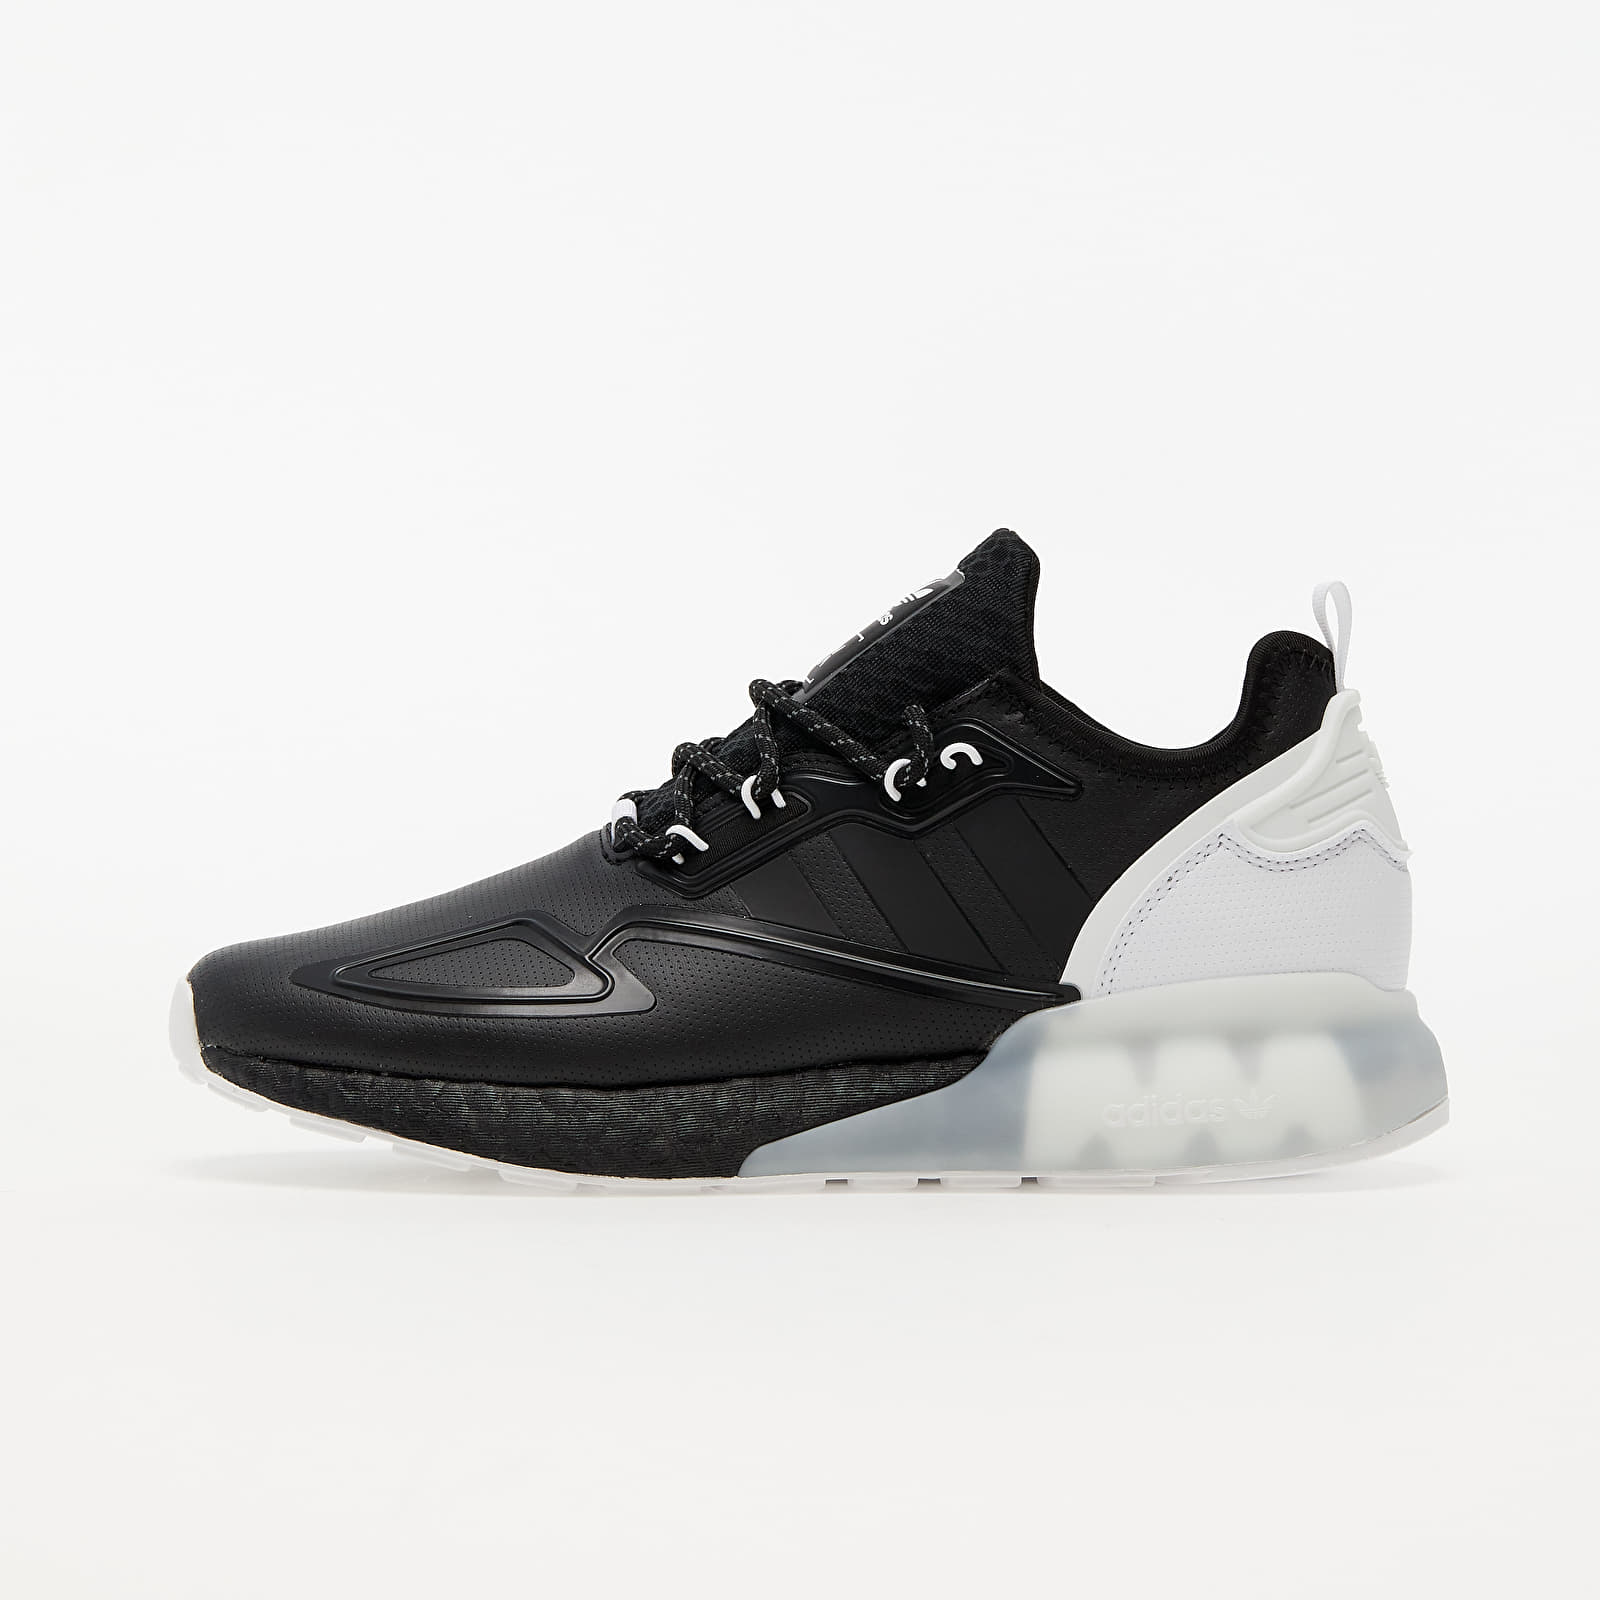 Men's shoes adidas ZX 2K BOOST Core Black/ Core Black/ Ftwr White